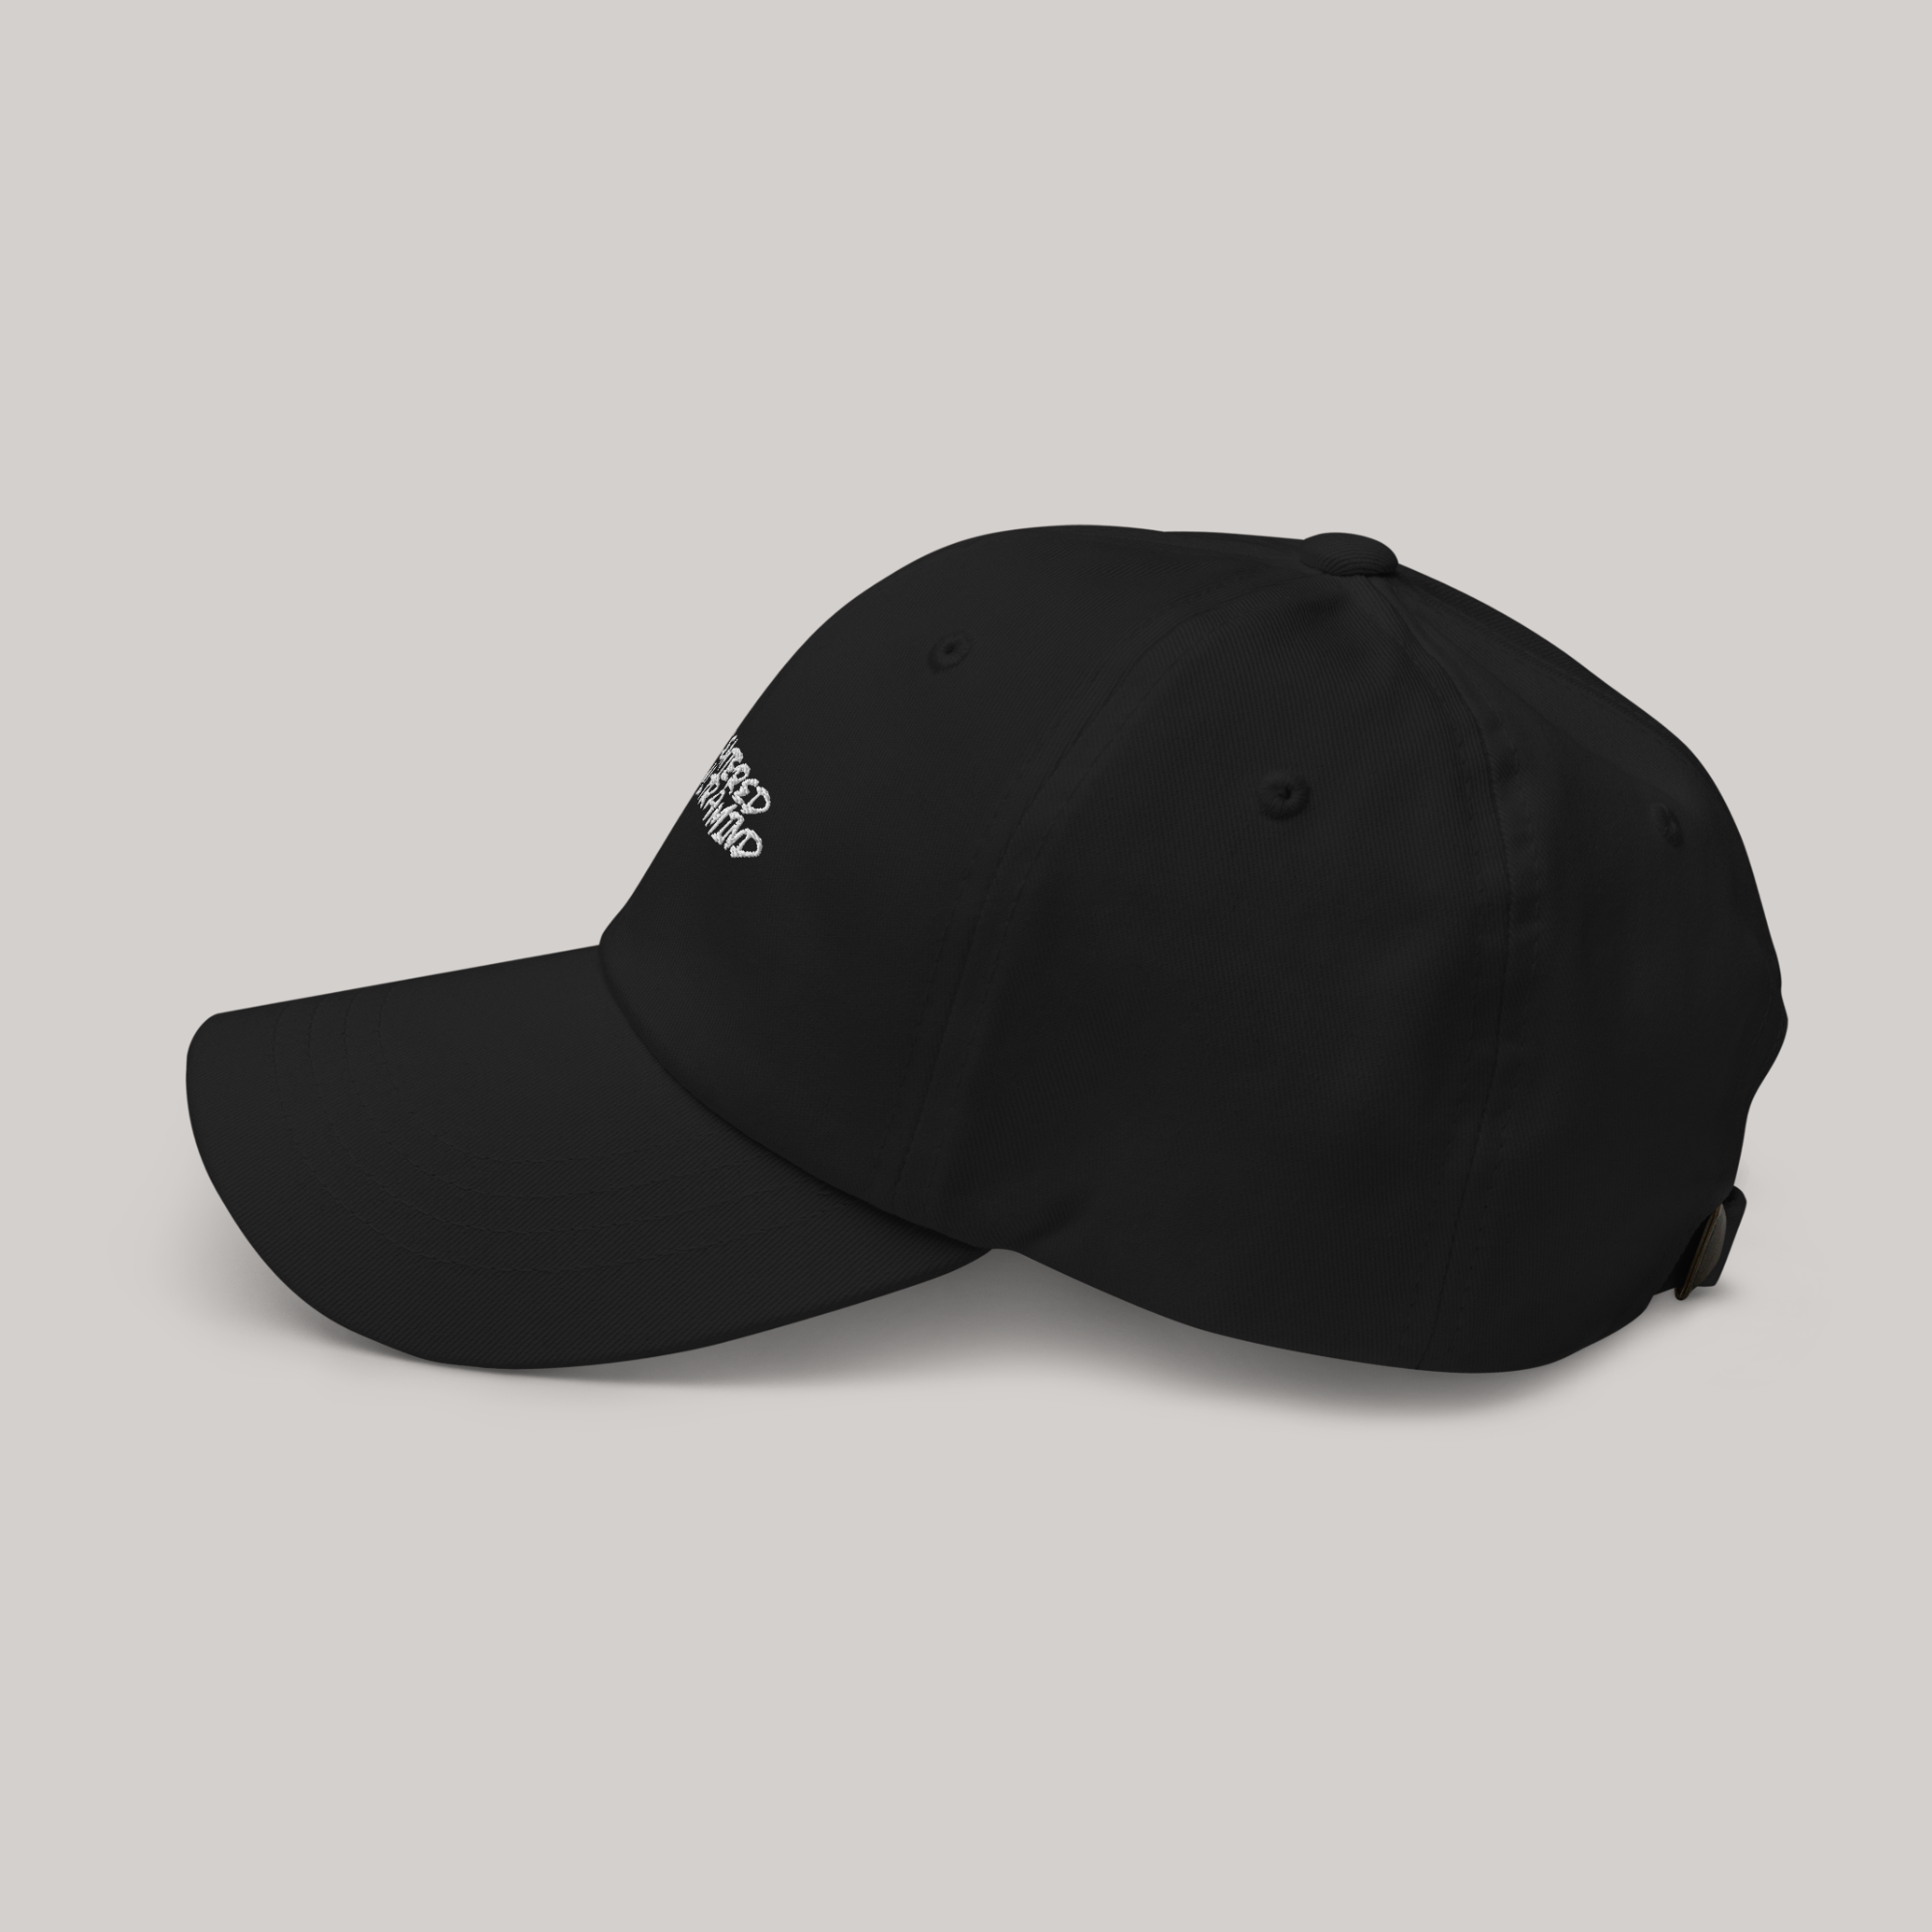 aeterius streetwear side view of black dad hat cap headwear